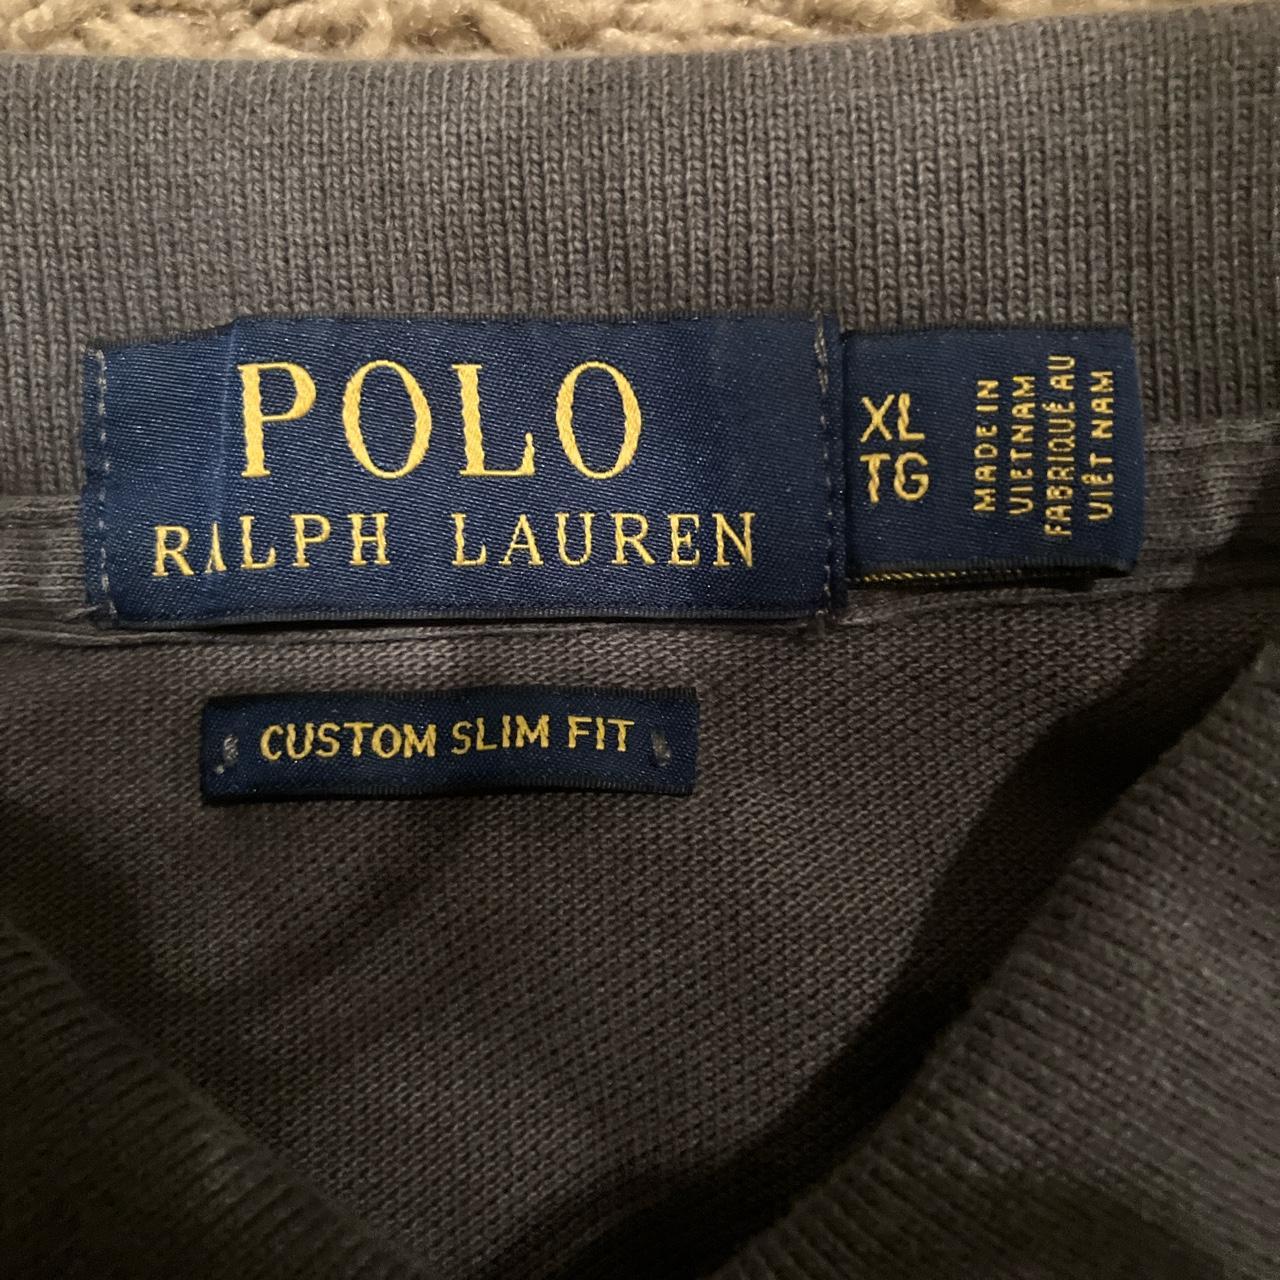 Polo Ralph Lauren Polo Shirt Size XL Small... - Depop